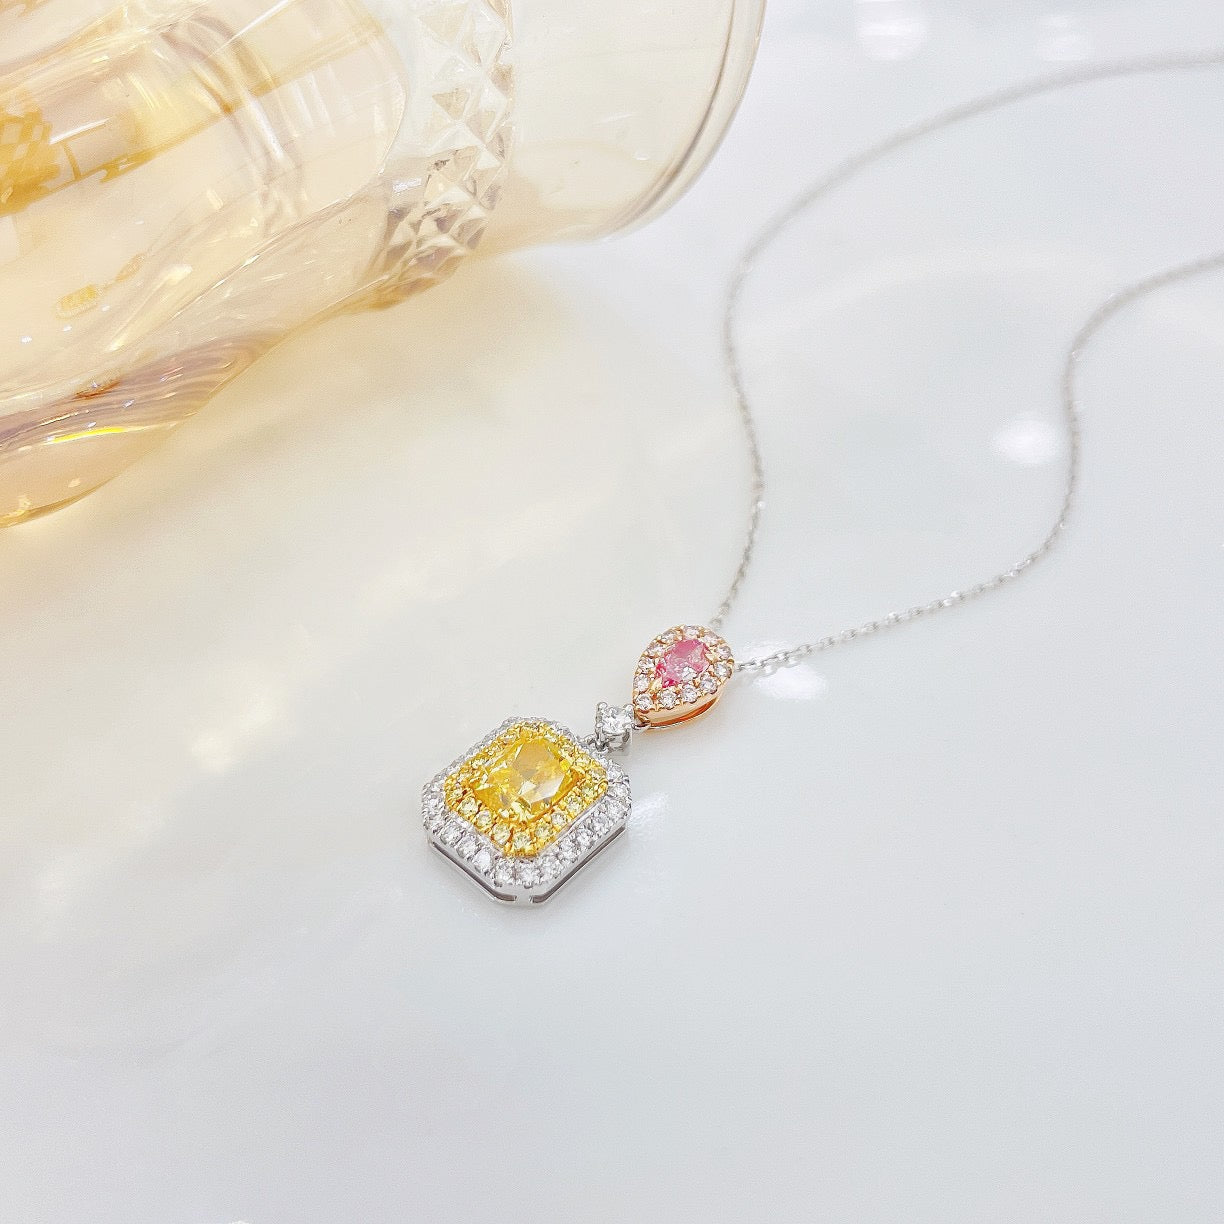 Yellow Diamond Necklaces & Pendants | Poyas Jewelry